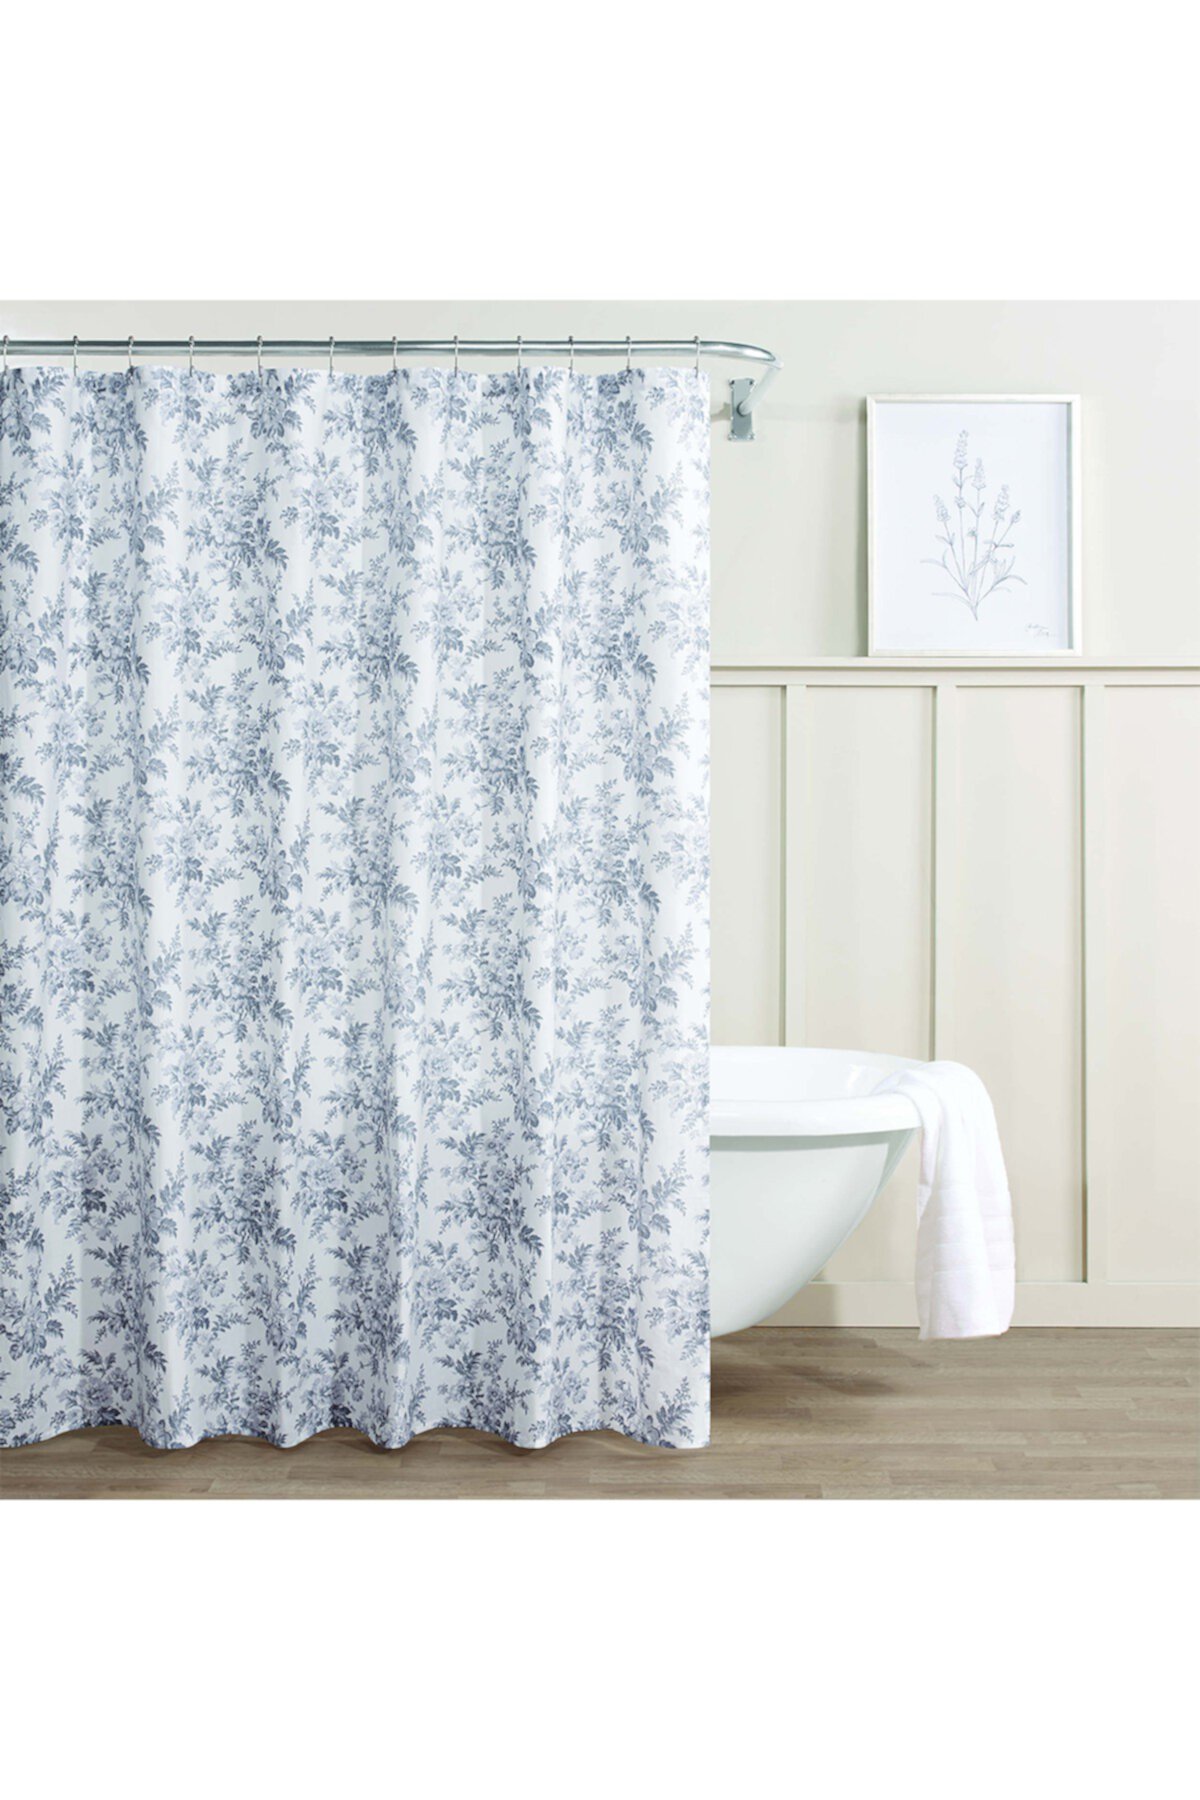 Annalise Floral Medium Grey 72" X 72" Shower Curtain Laura Ashley